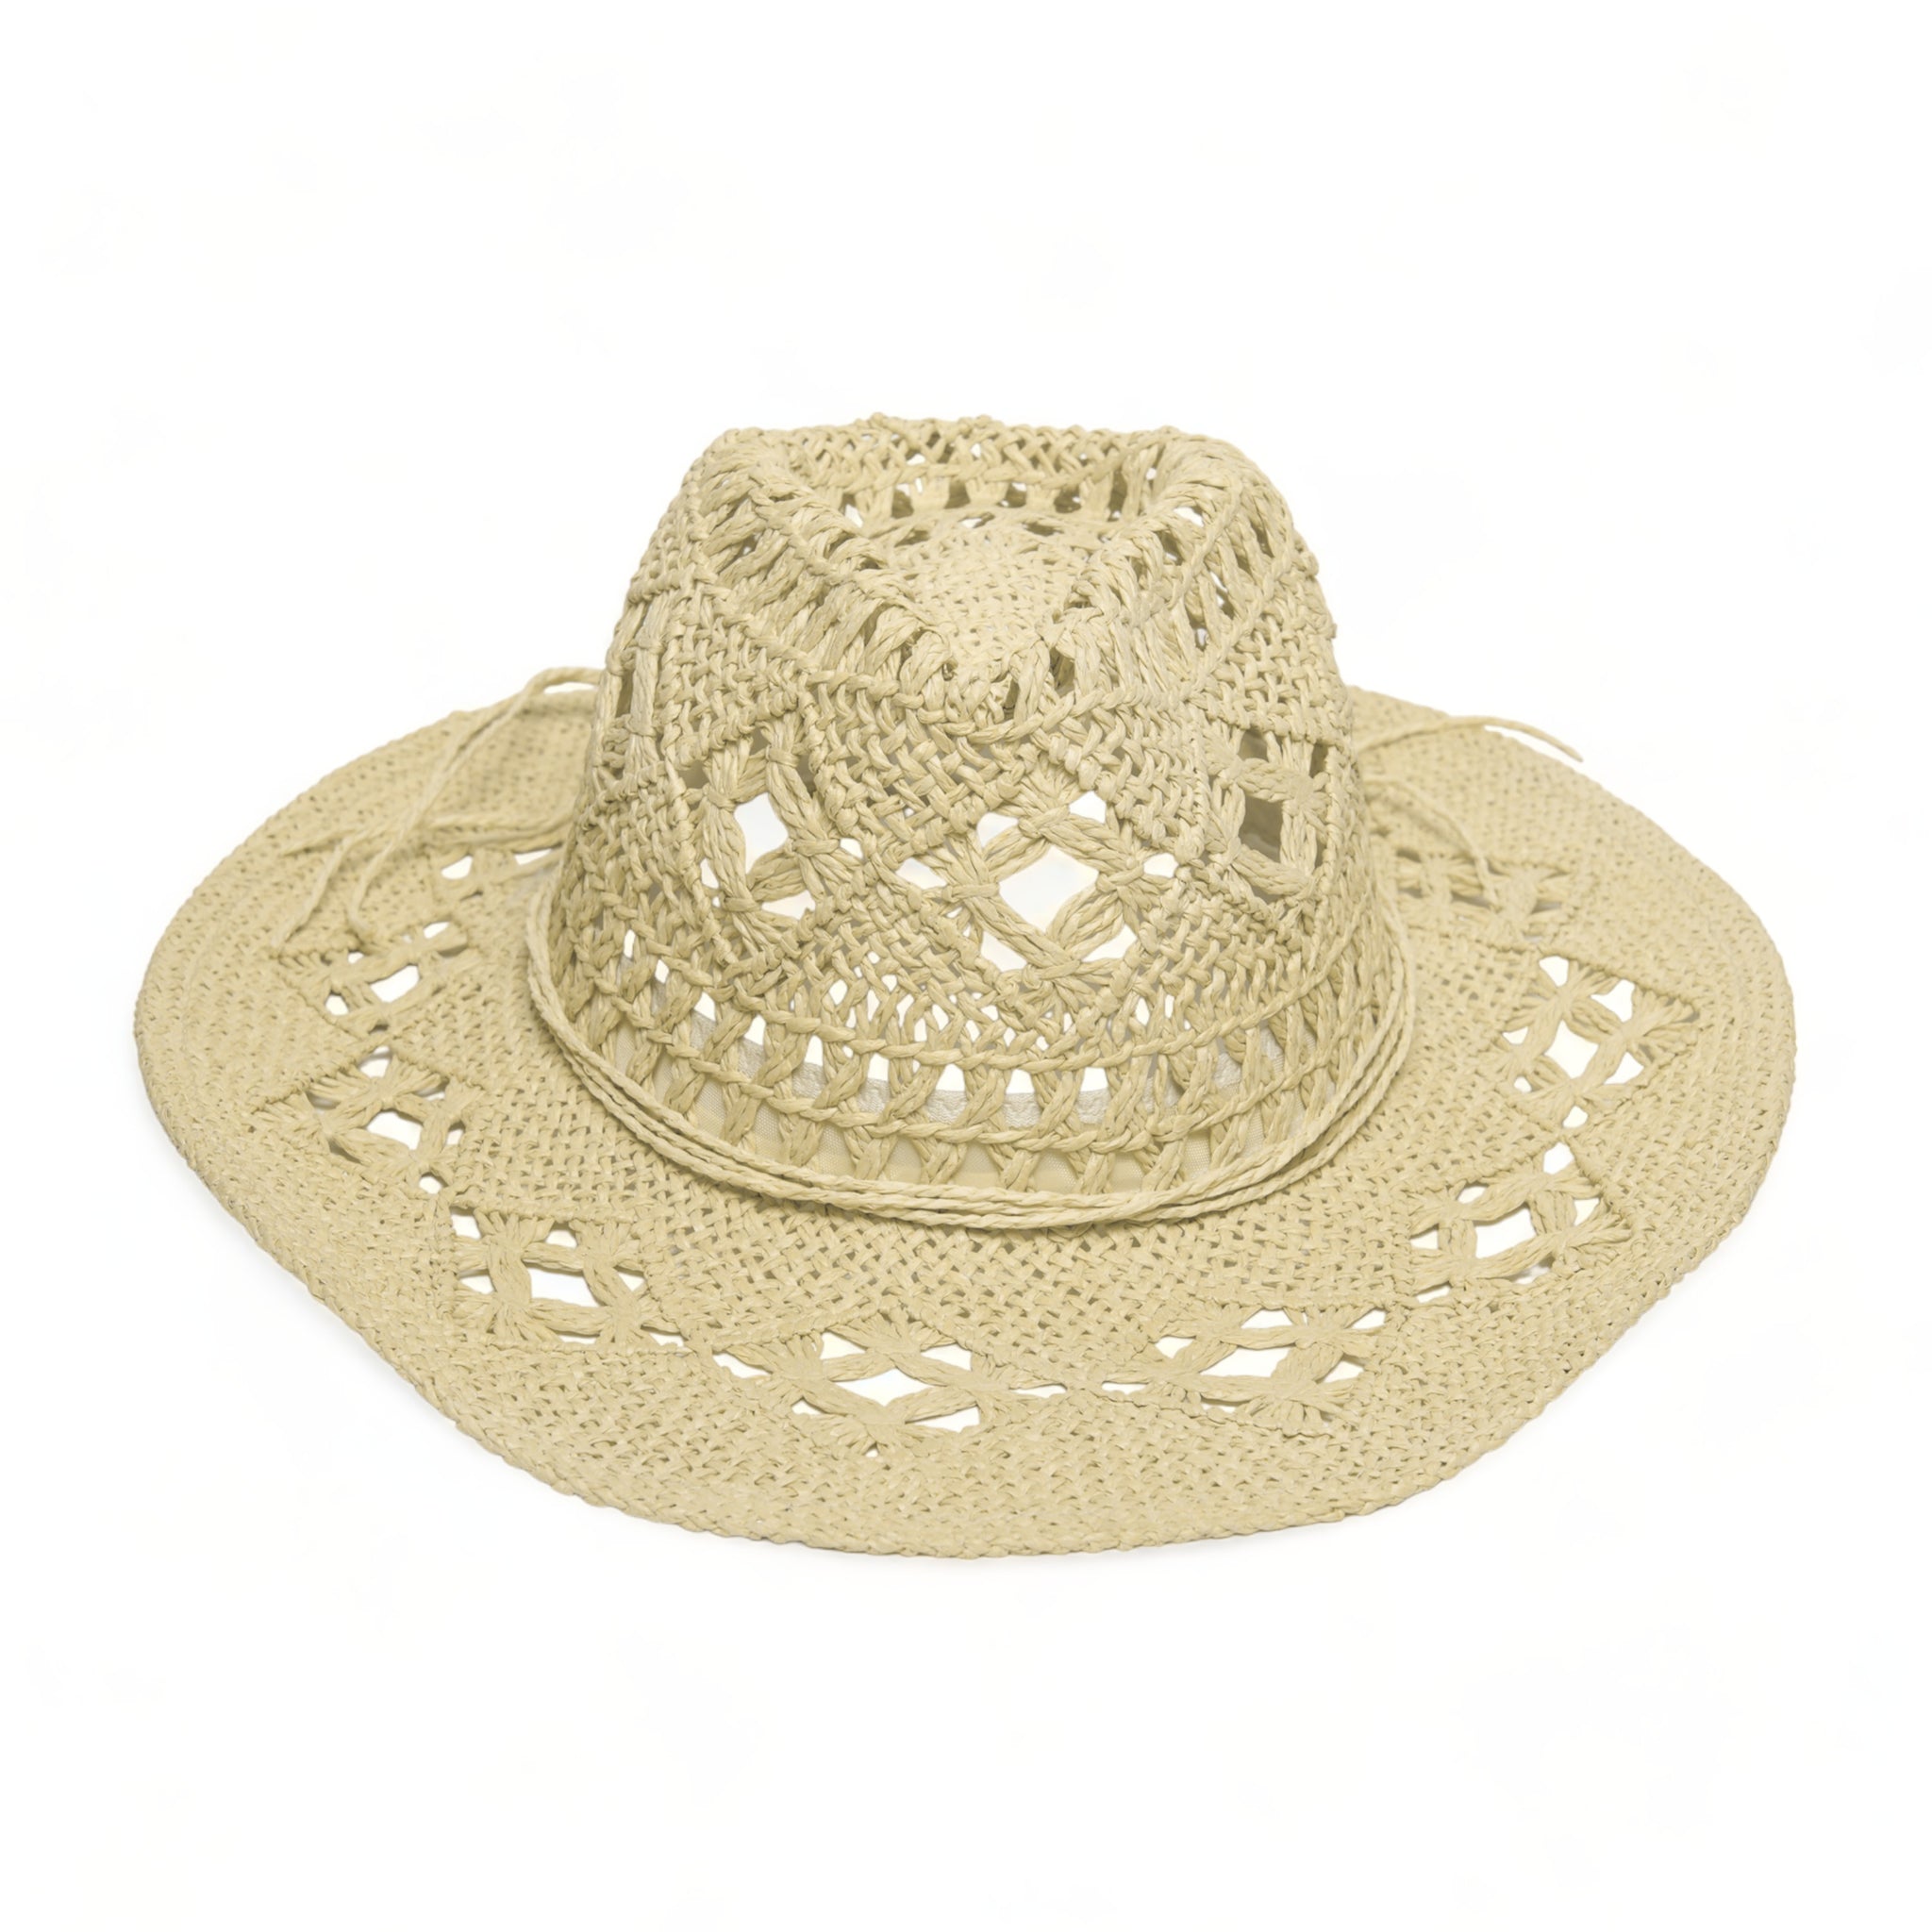 Chokore Handcrafted Cowboy Hat (Beige)